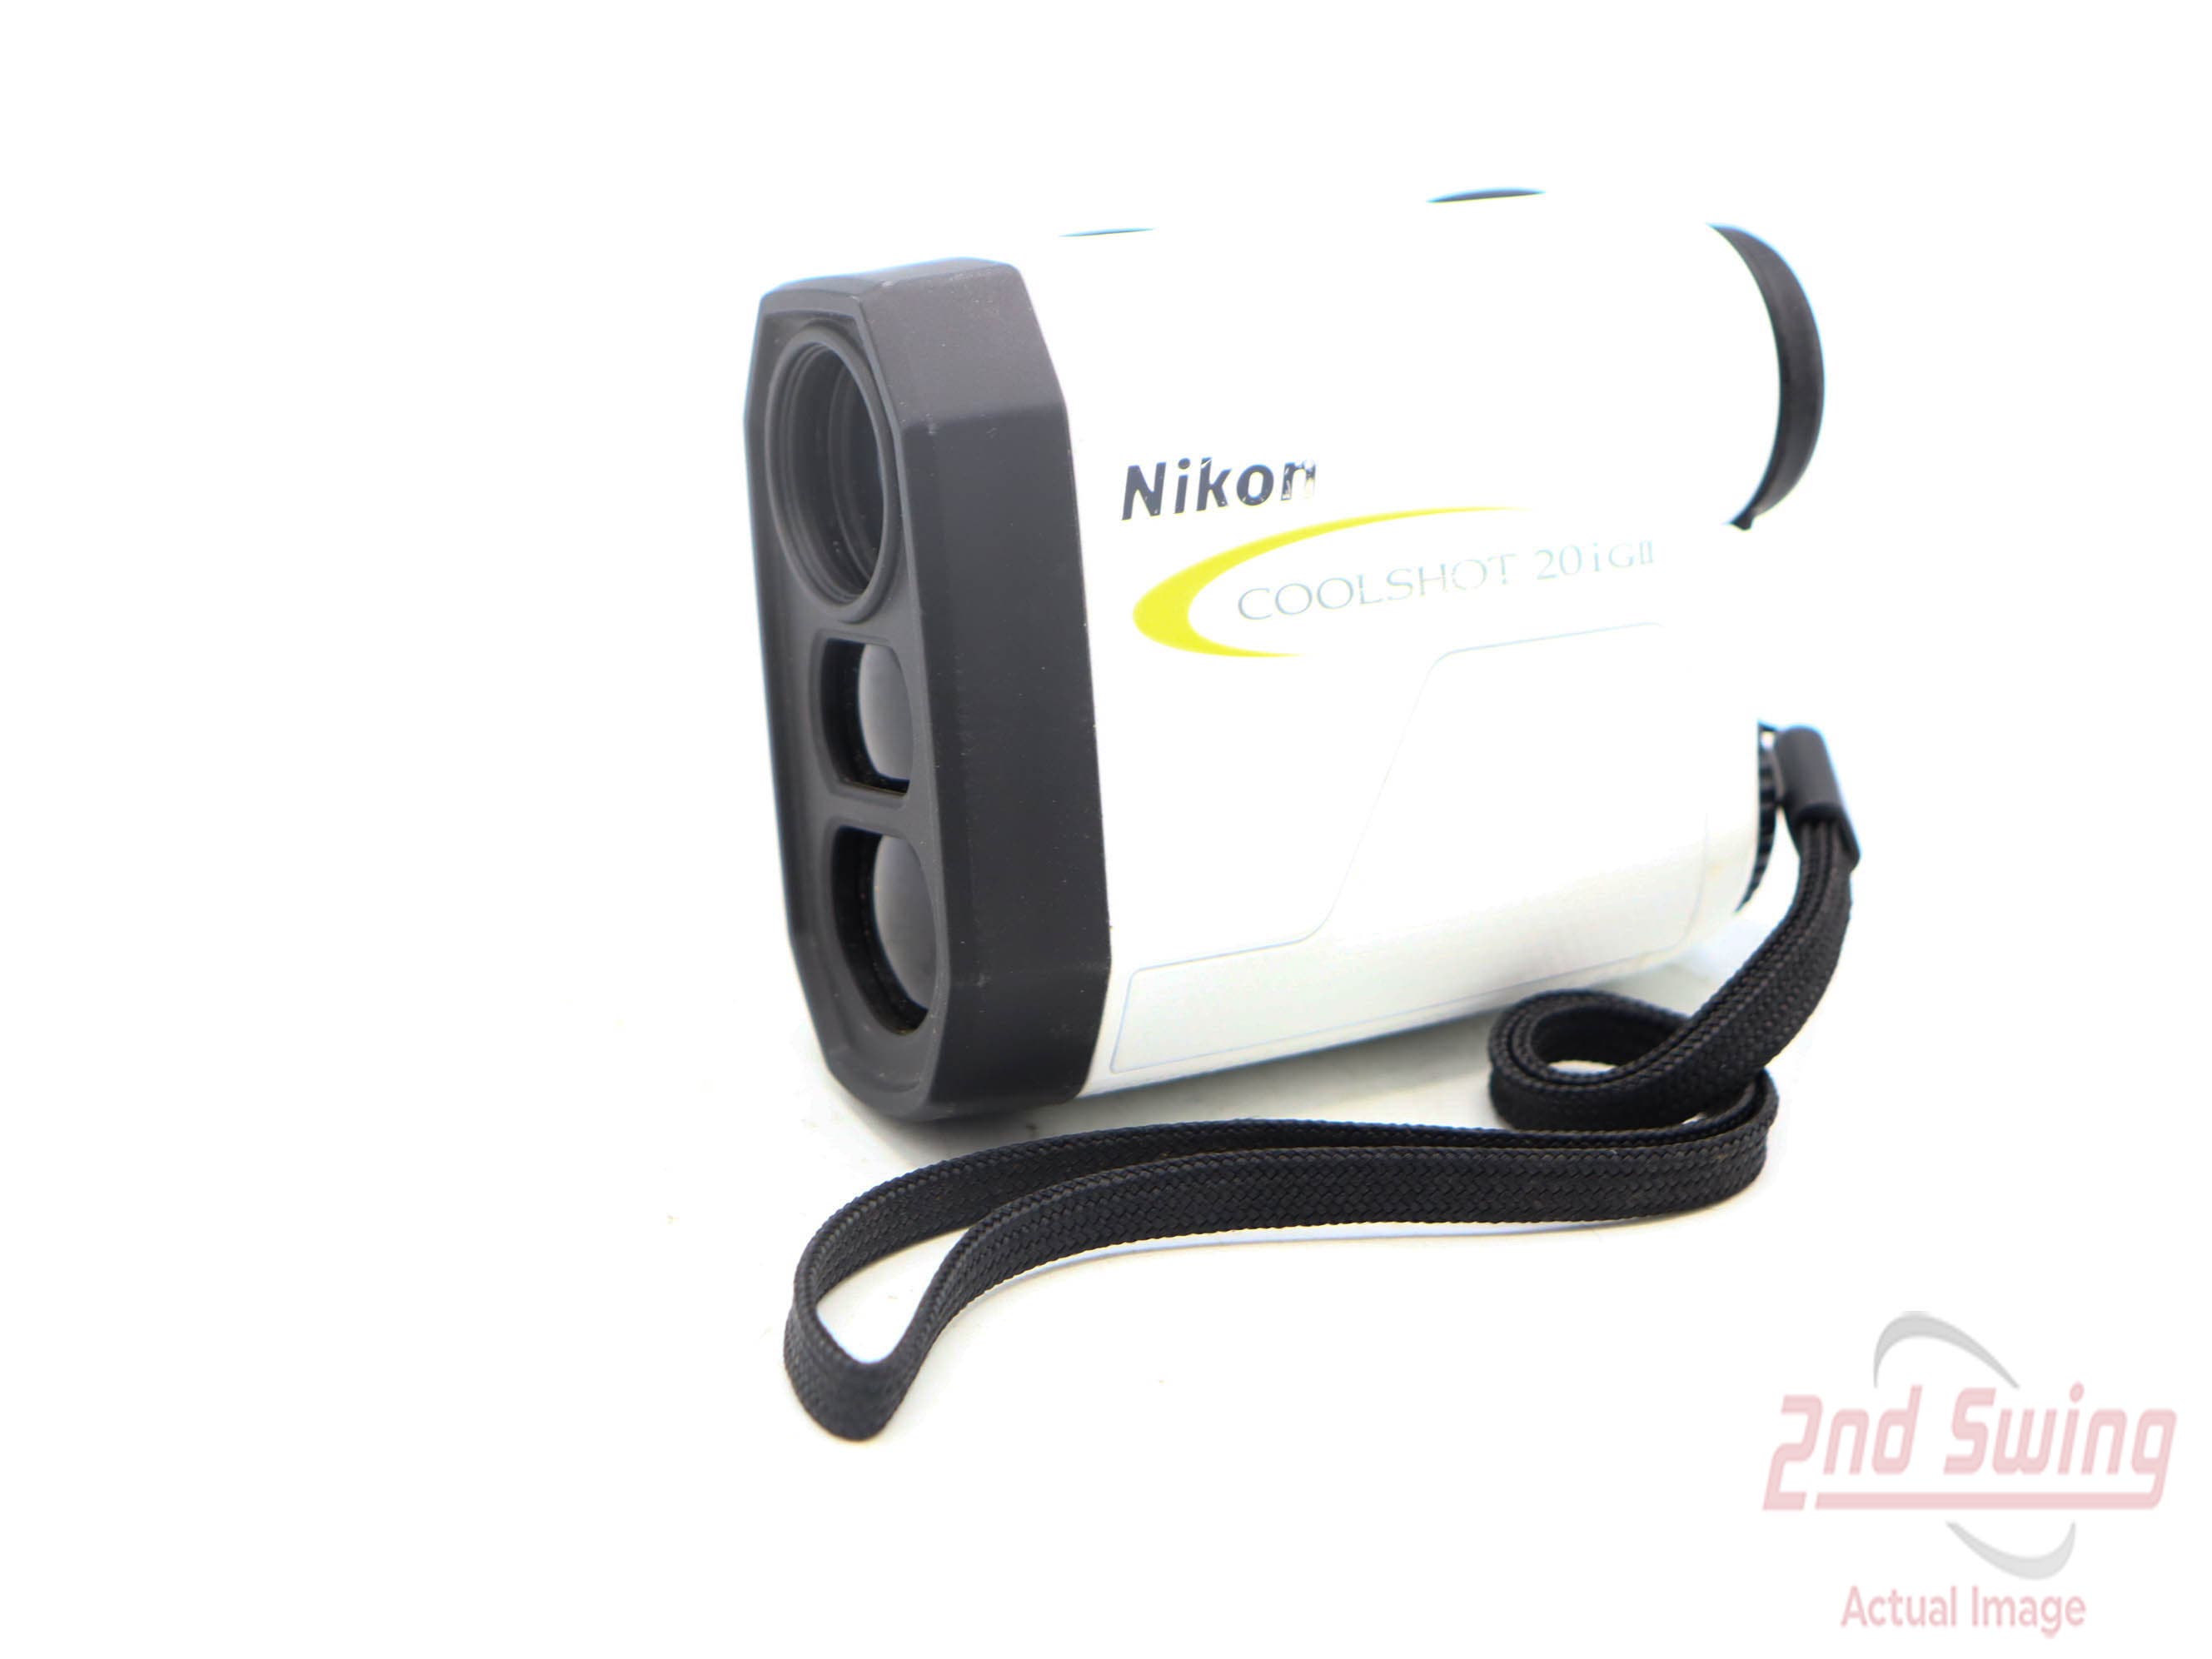 Nikon Coolshot 20i GII Golf GPS & Rangefinders (D-52331437031)